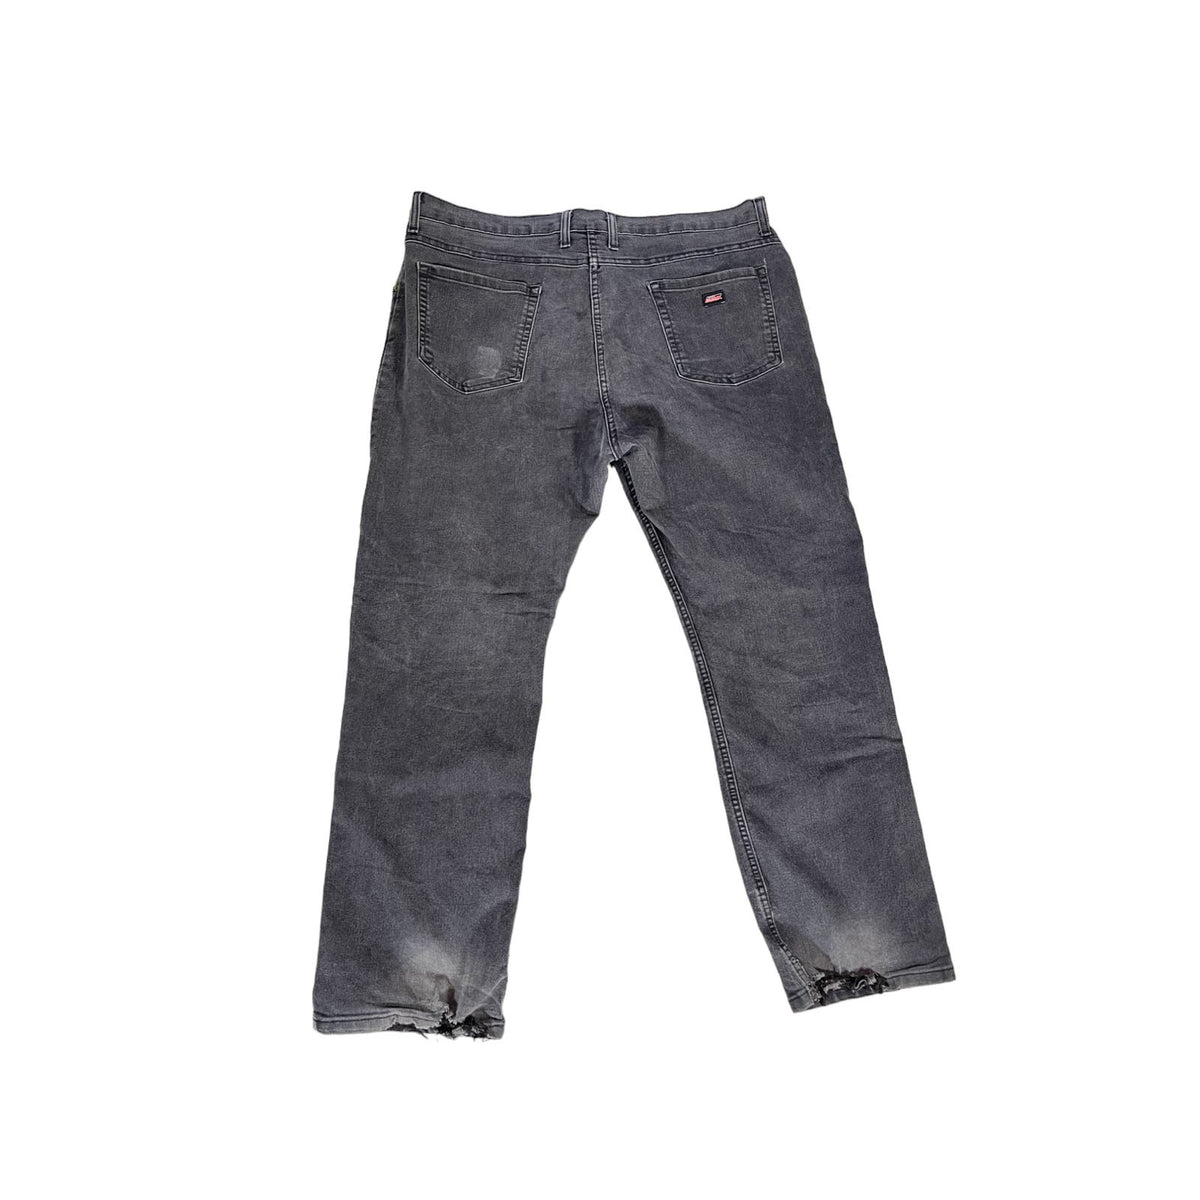 Vintage Dickies Distressed Black Denim Jeans 42x30